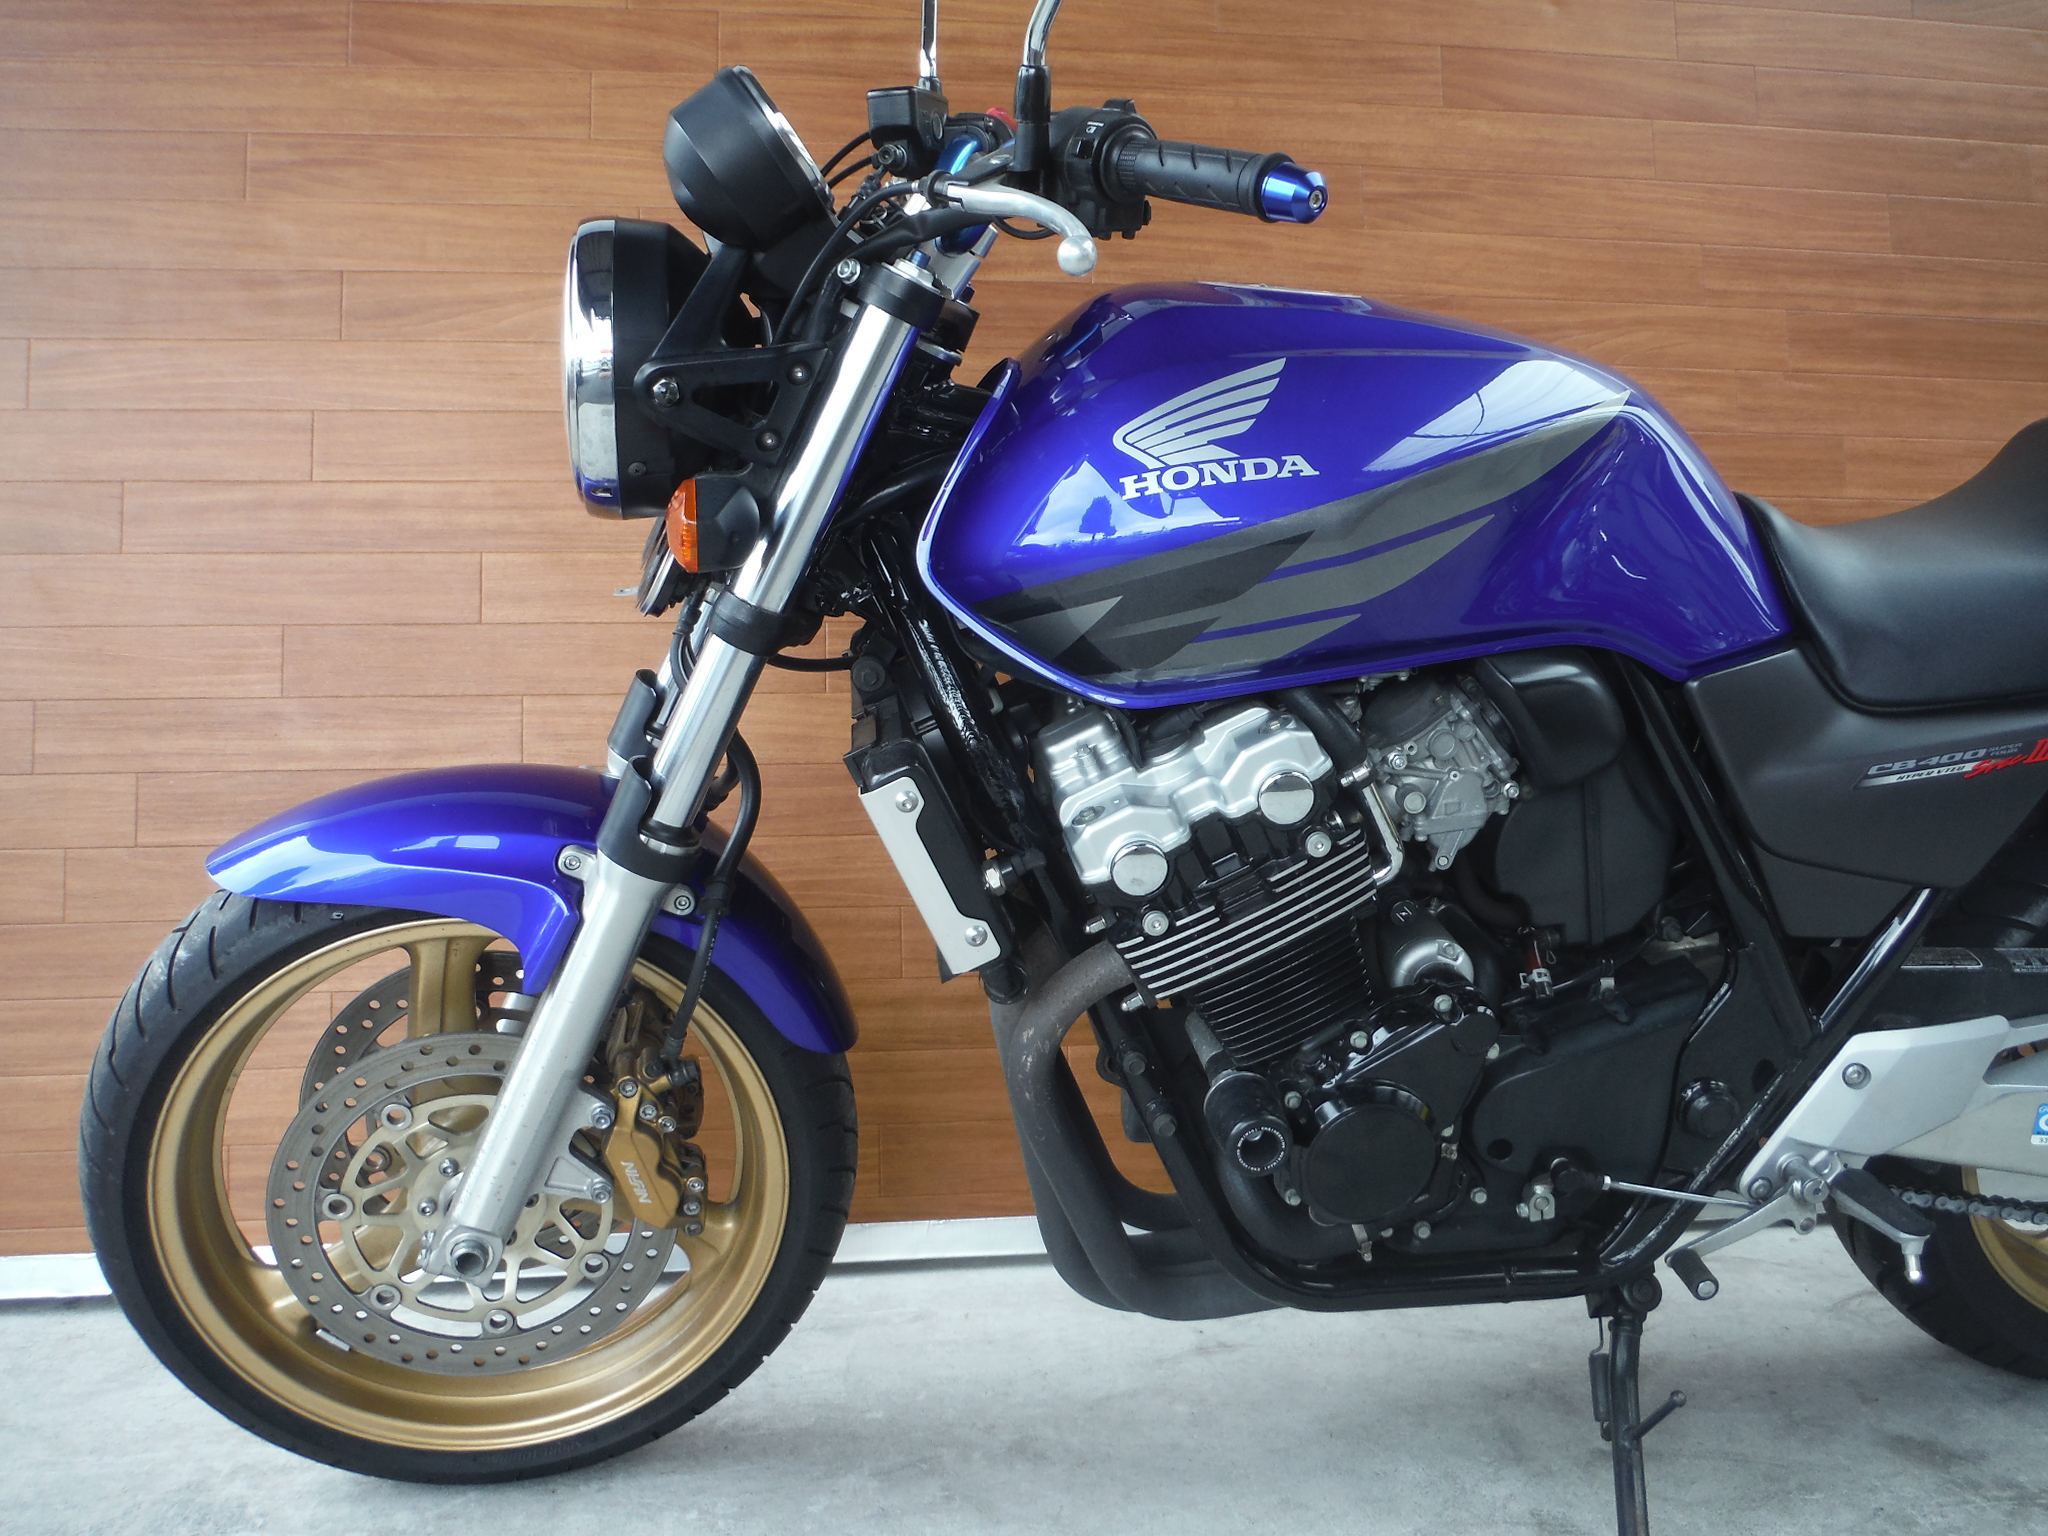 熊本中古車バイク情報 ホンダ Cb400sf 400 05年モデル 青 熊本のバイクショップ アール バイクの新車 中古車販売や買取 レンタル バイクのことならおまかせください